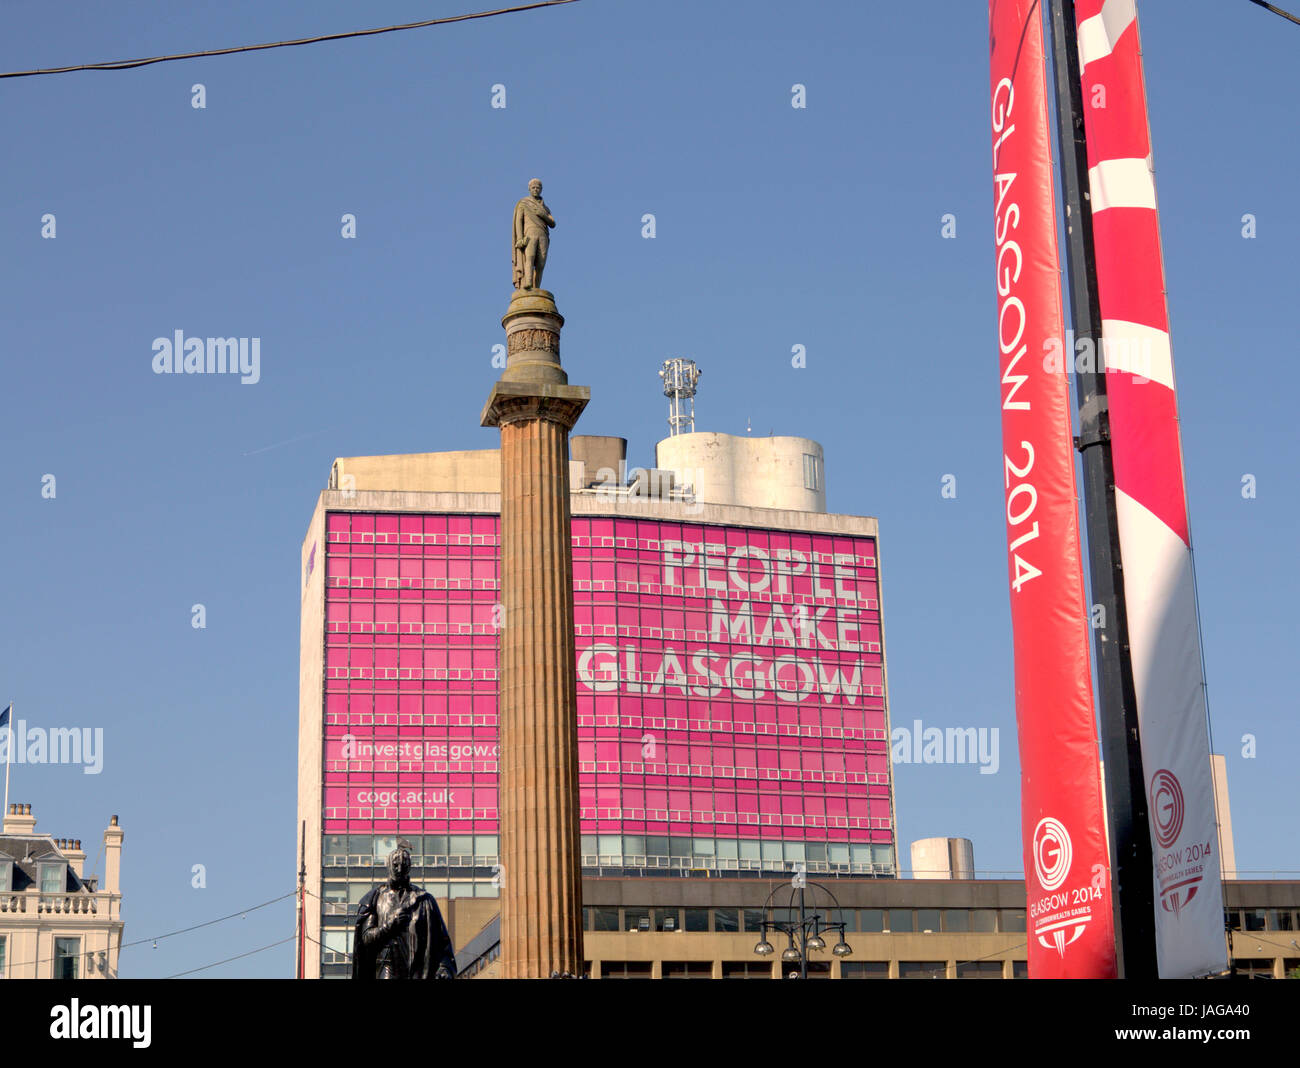 Juegos Commonwealth celebraciones 2014 George Square, Glasgow, Reino Unido Foto de stock